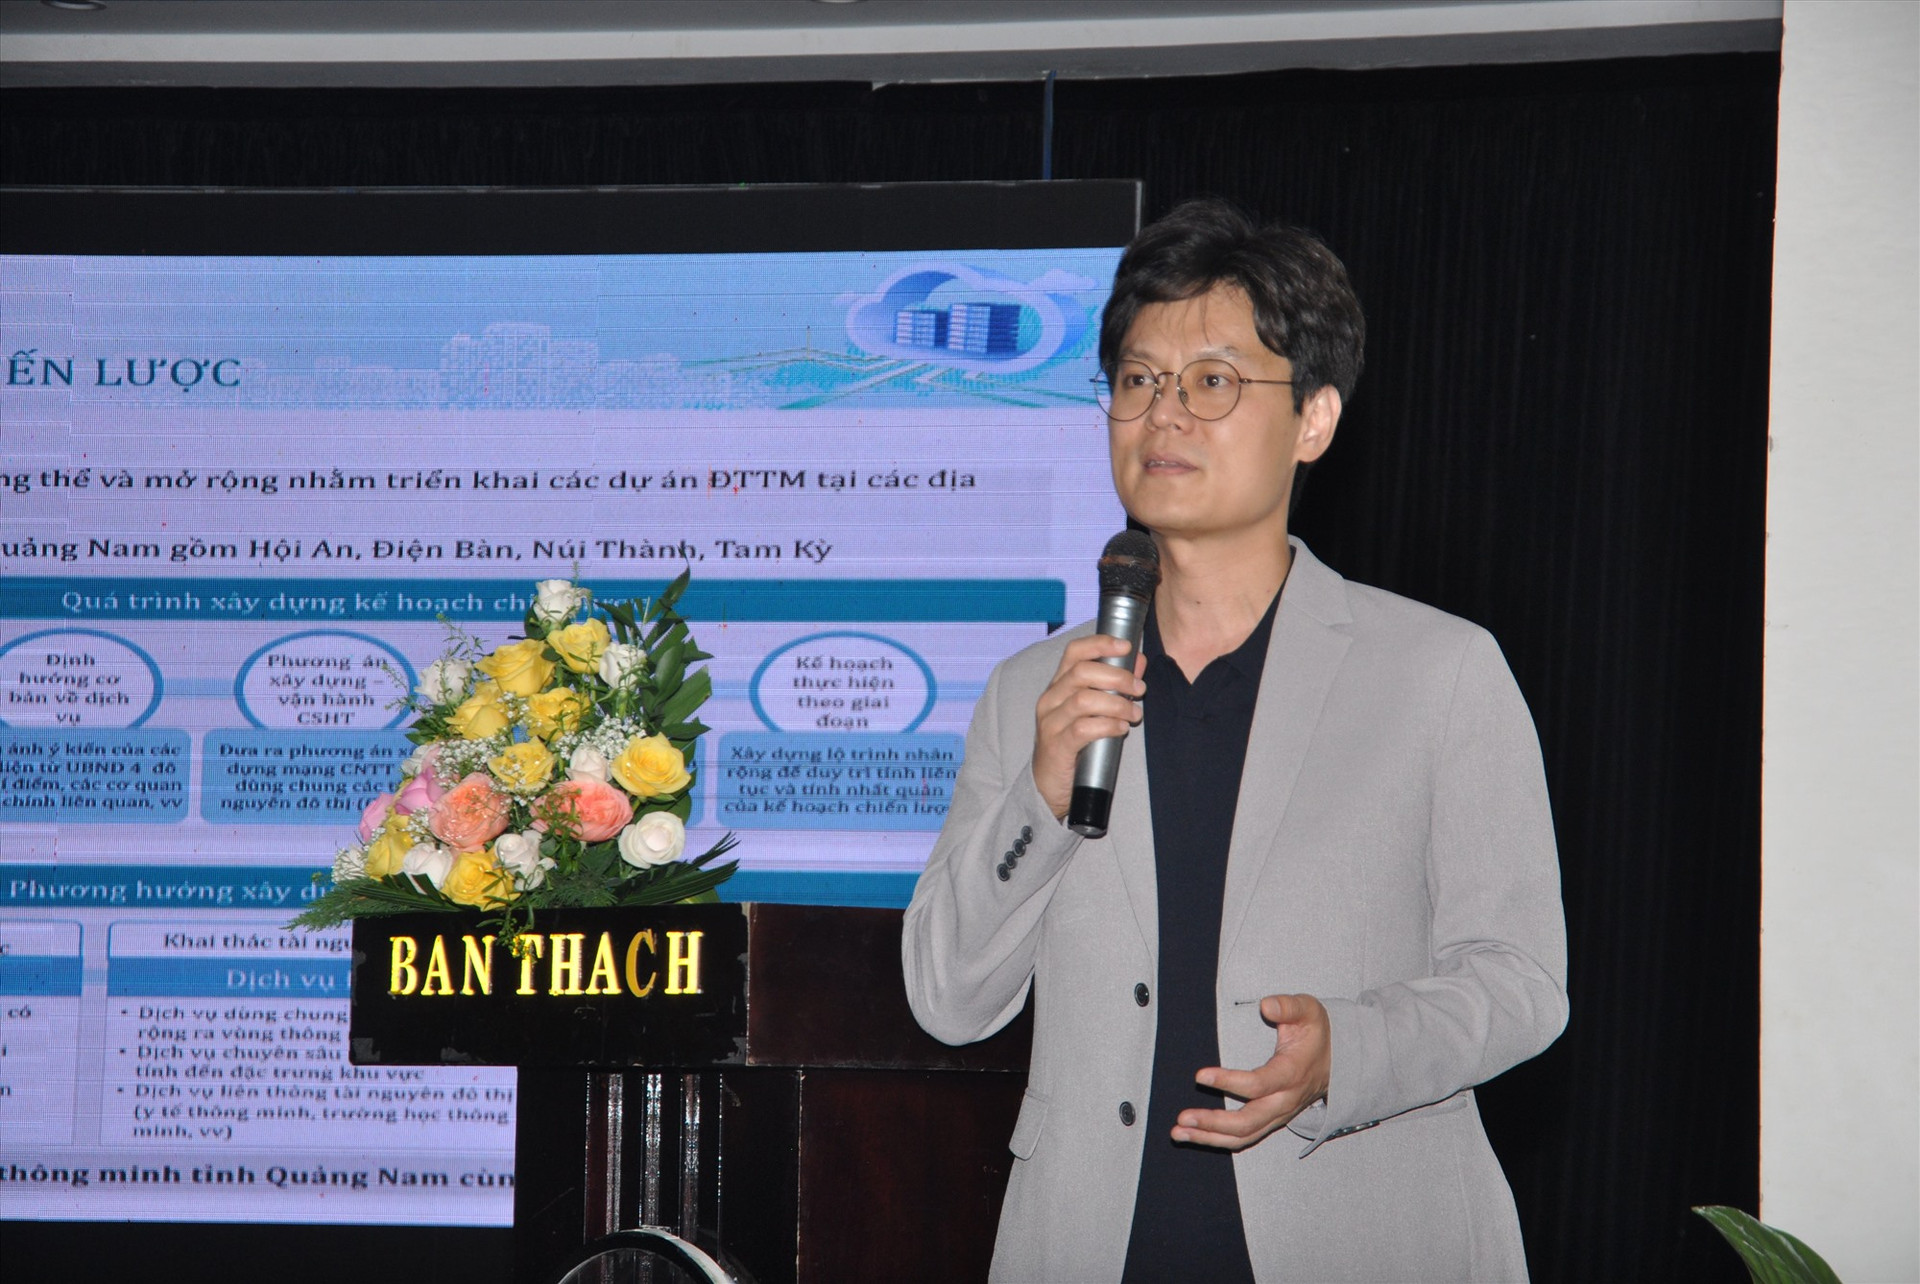 Giáo sư Yoo Seon Cheol (Đại học Anyang) trình bày chiến lược vùng thông minh tỉnh Quảng Nam. Ảnh: X.P